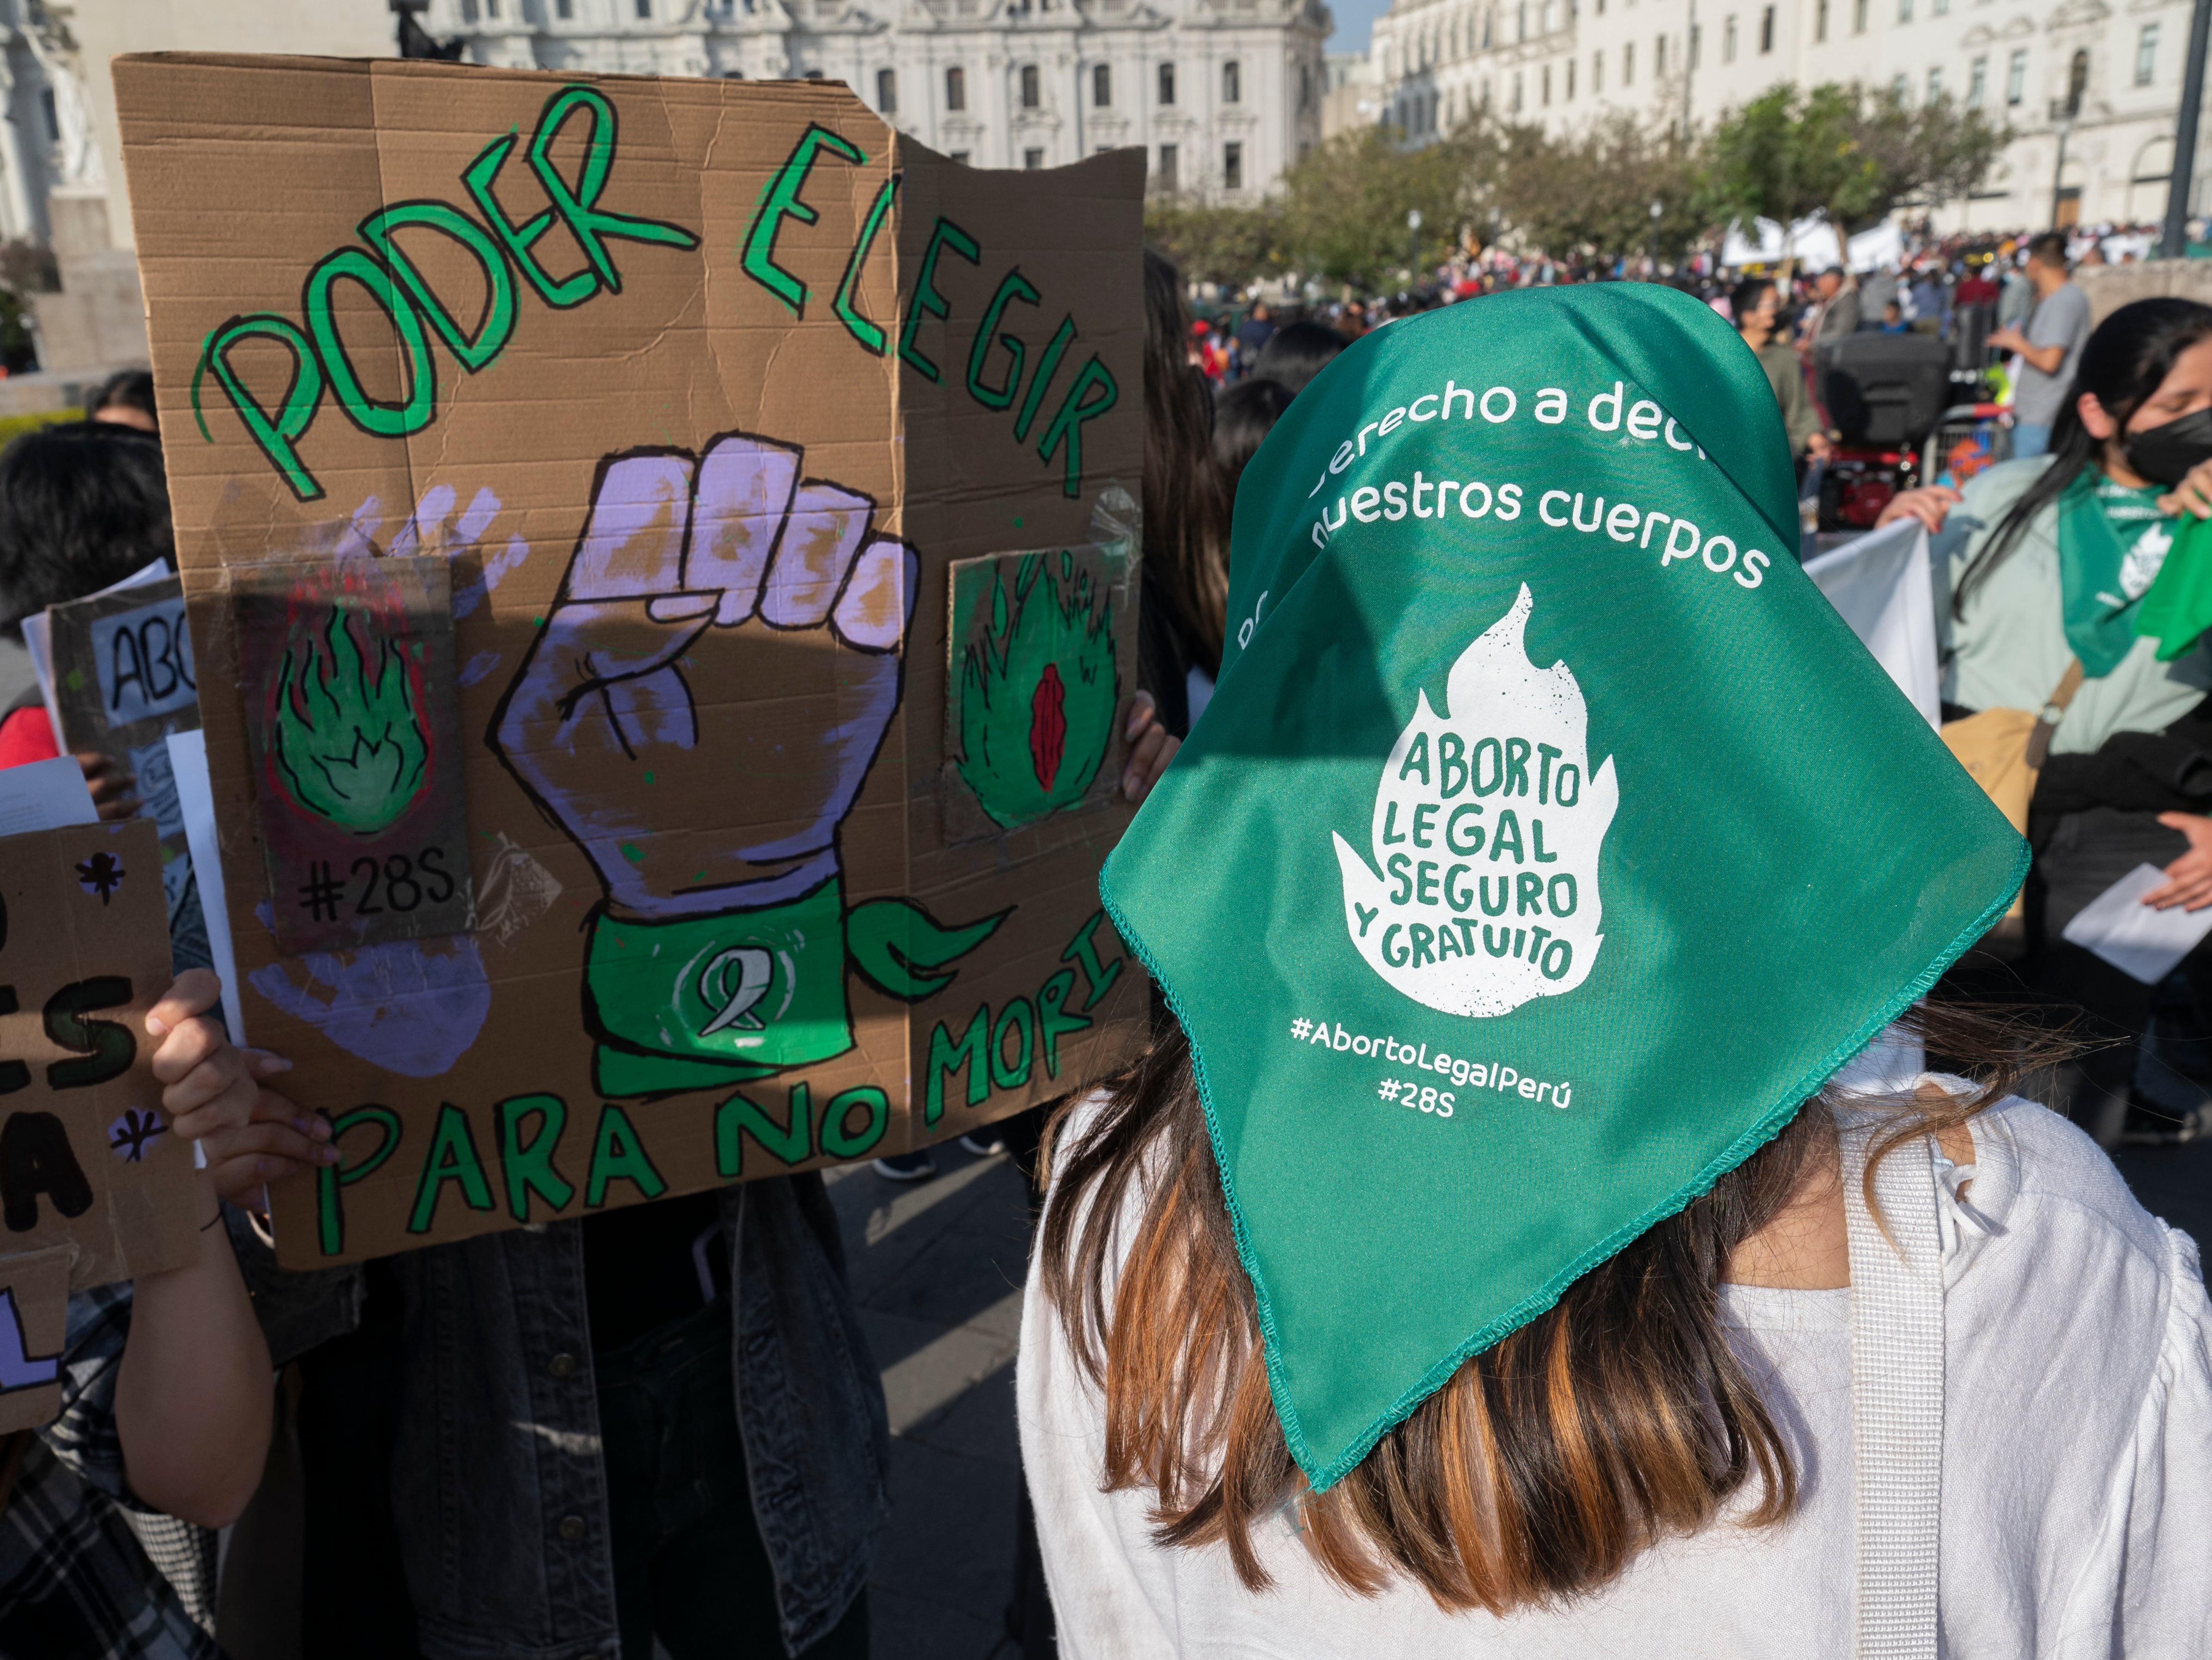 El congresista Alejandro Muñante sostuvo que dentro de las actividades de las ONG está la promoción de "fines ilícitos como es el aborto indiscriminado". (Foto de Cris BOURONCLE / AFP)